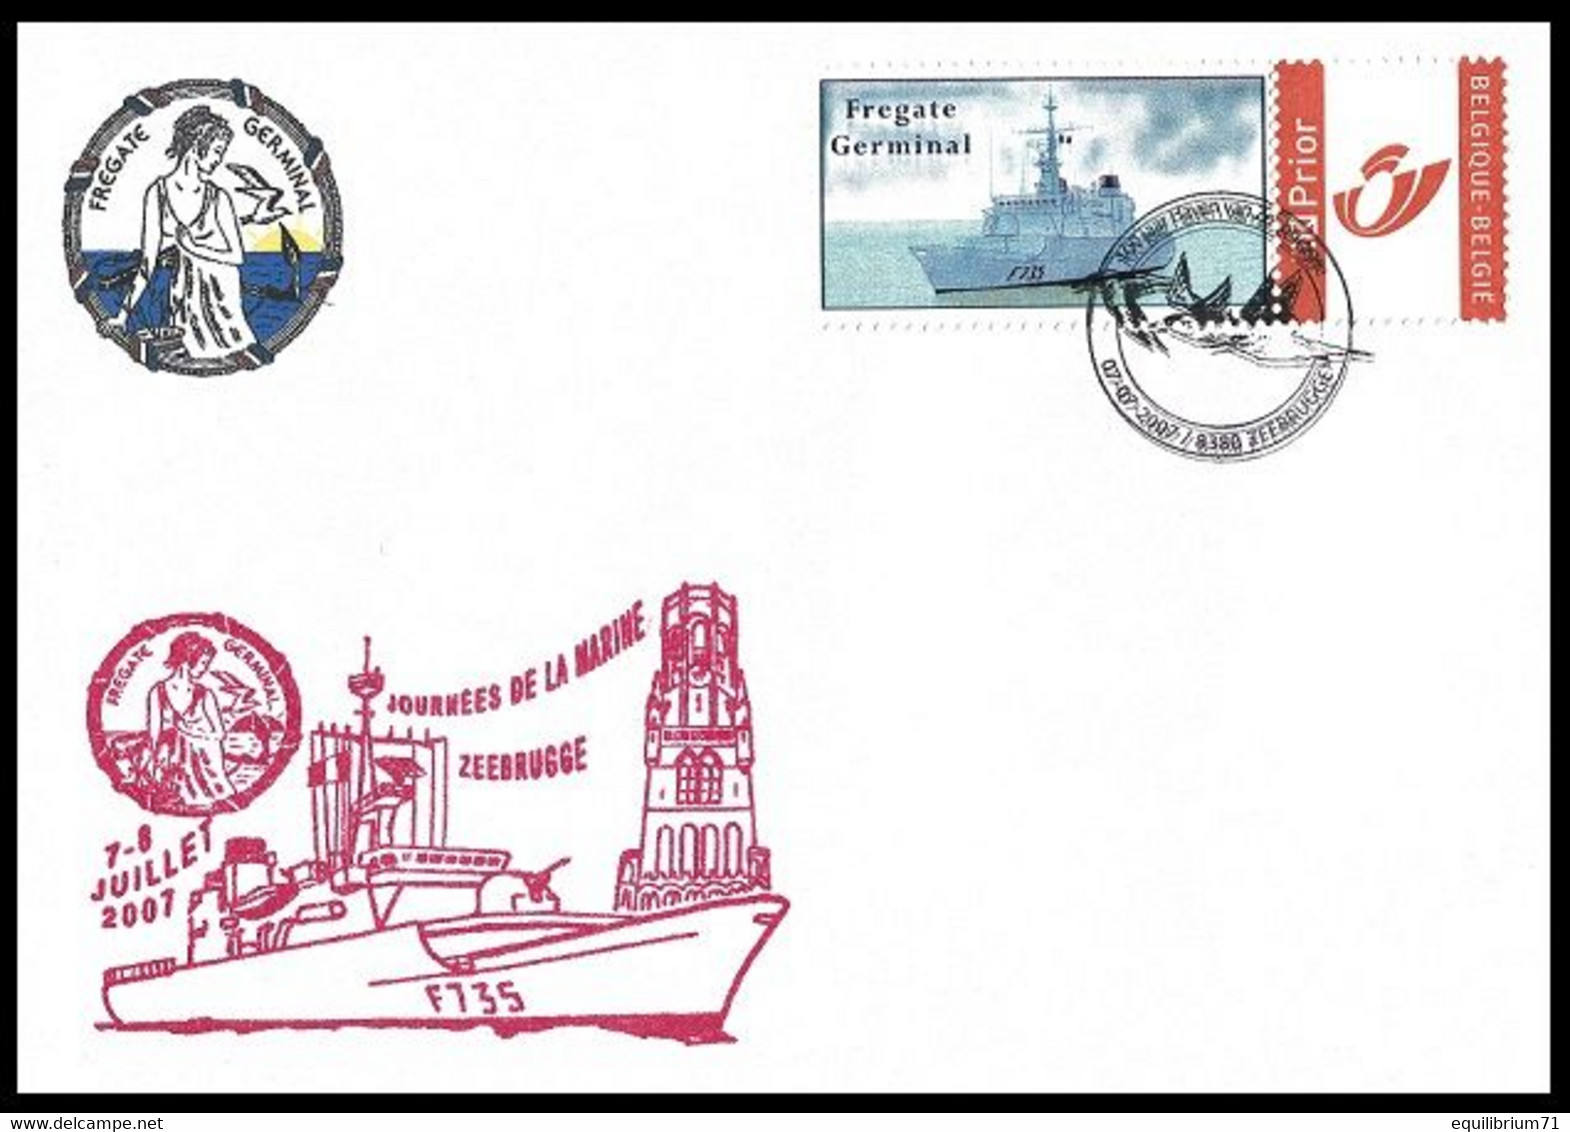 Enveloppe Souvenir/Herdenkingsomslag° - Journée De La Marine/Vlootdagen - 7 & 8 / Juillet/2007 - Frégate Germinal F735 - Covers & Documents